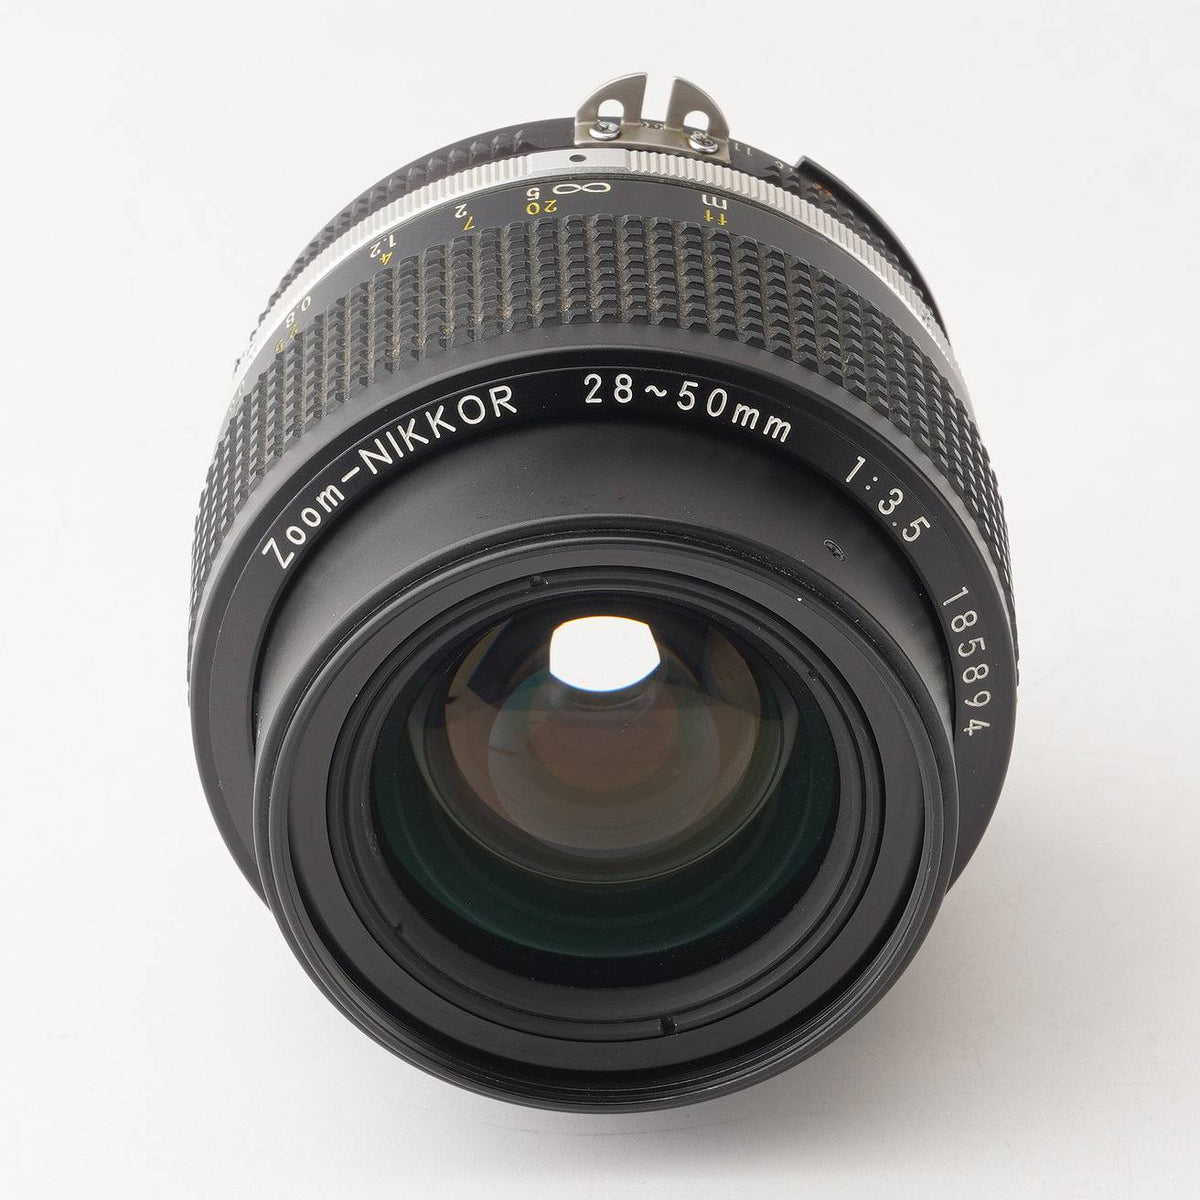 ニコン Nikon Ai-s Zoom NIKKOR 28-50mm F3.5